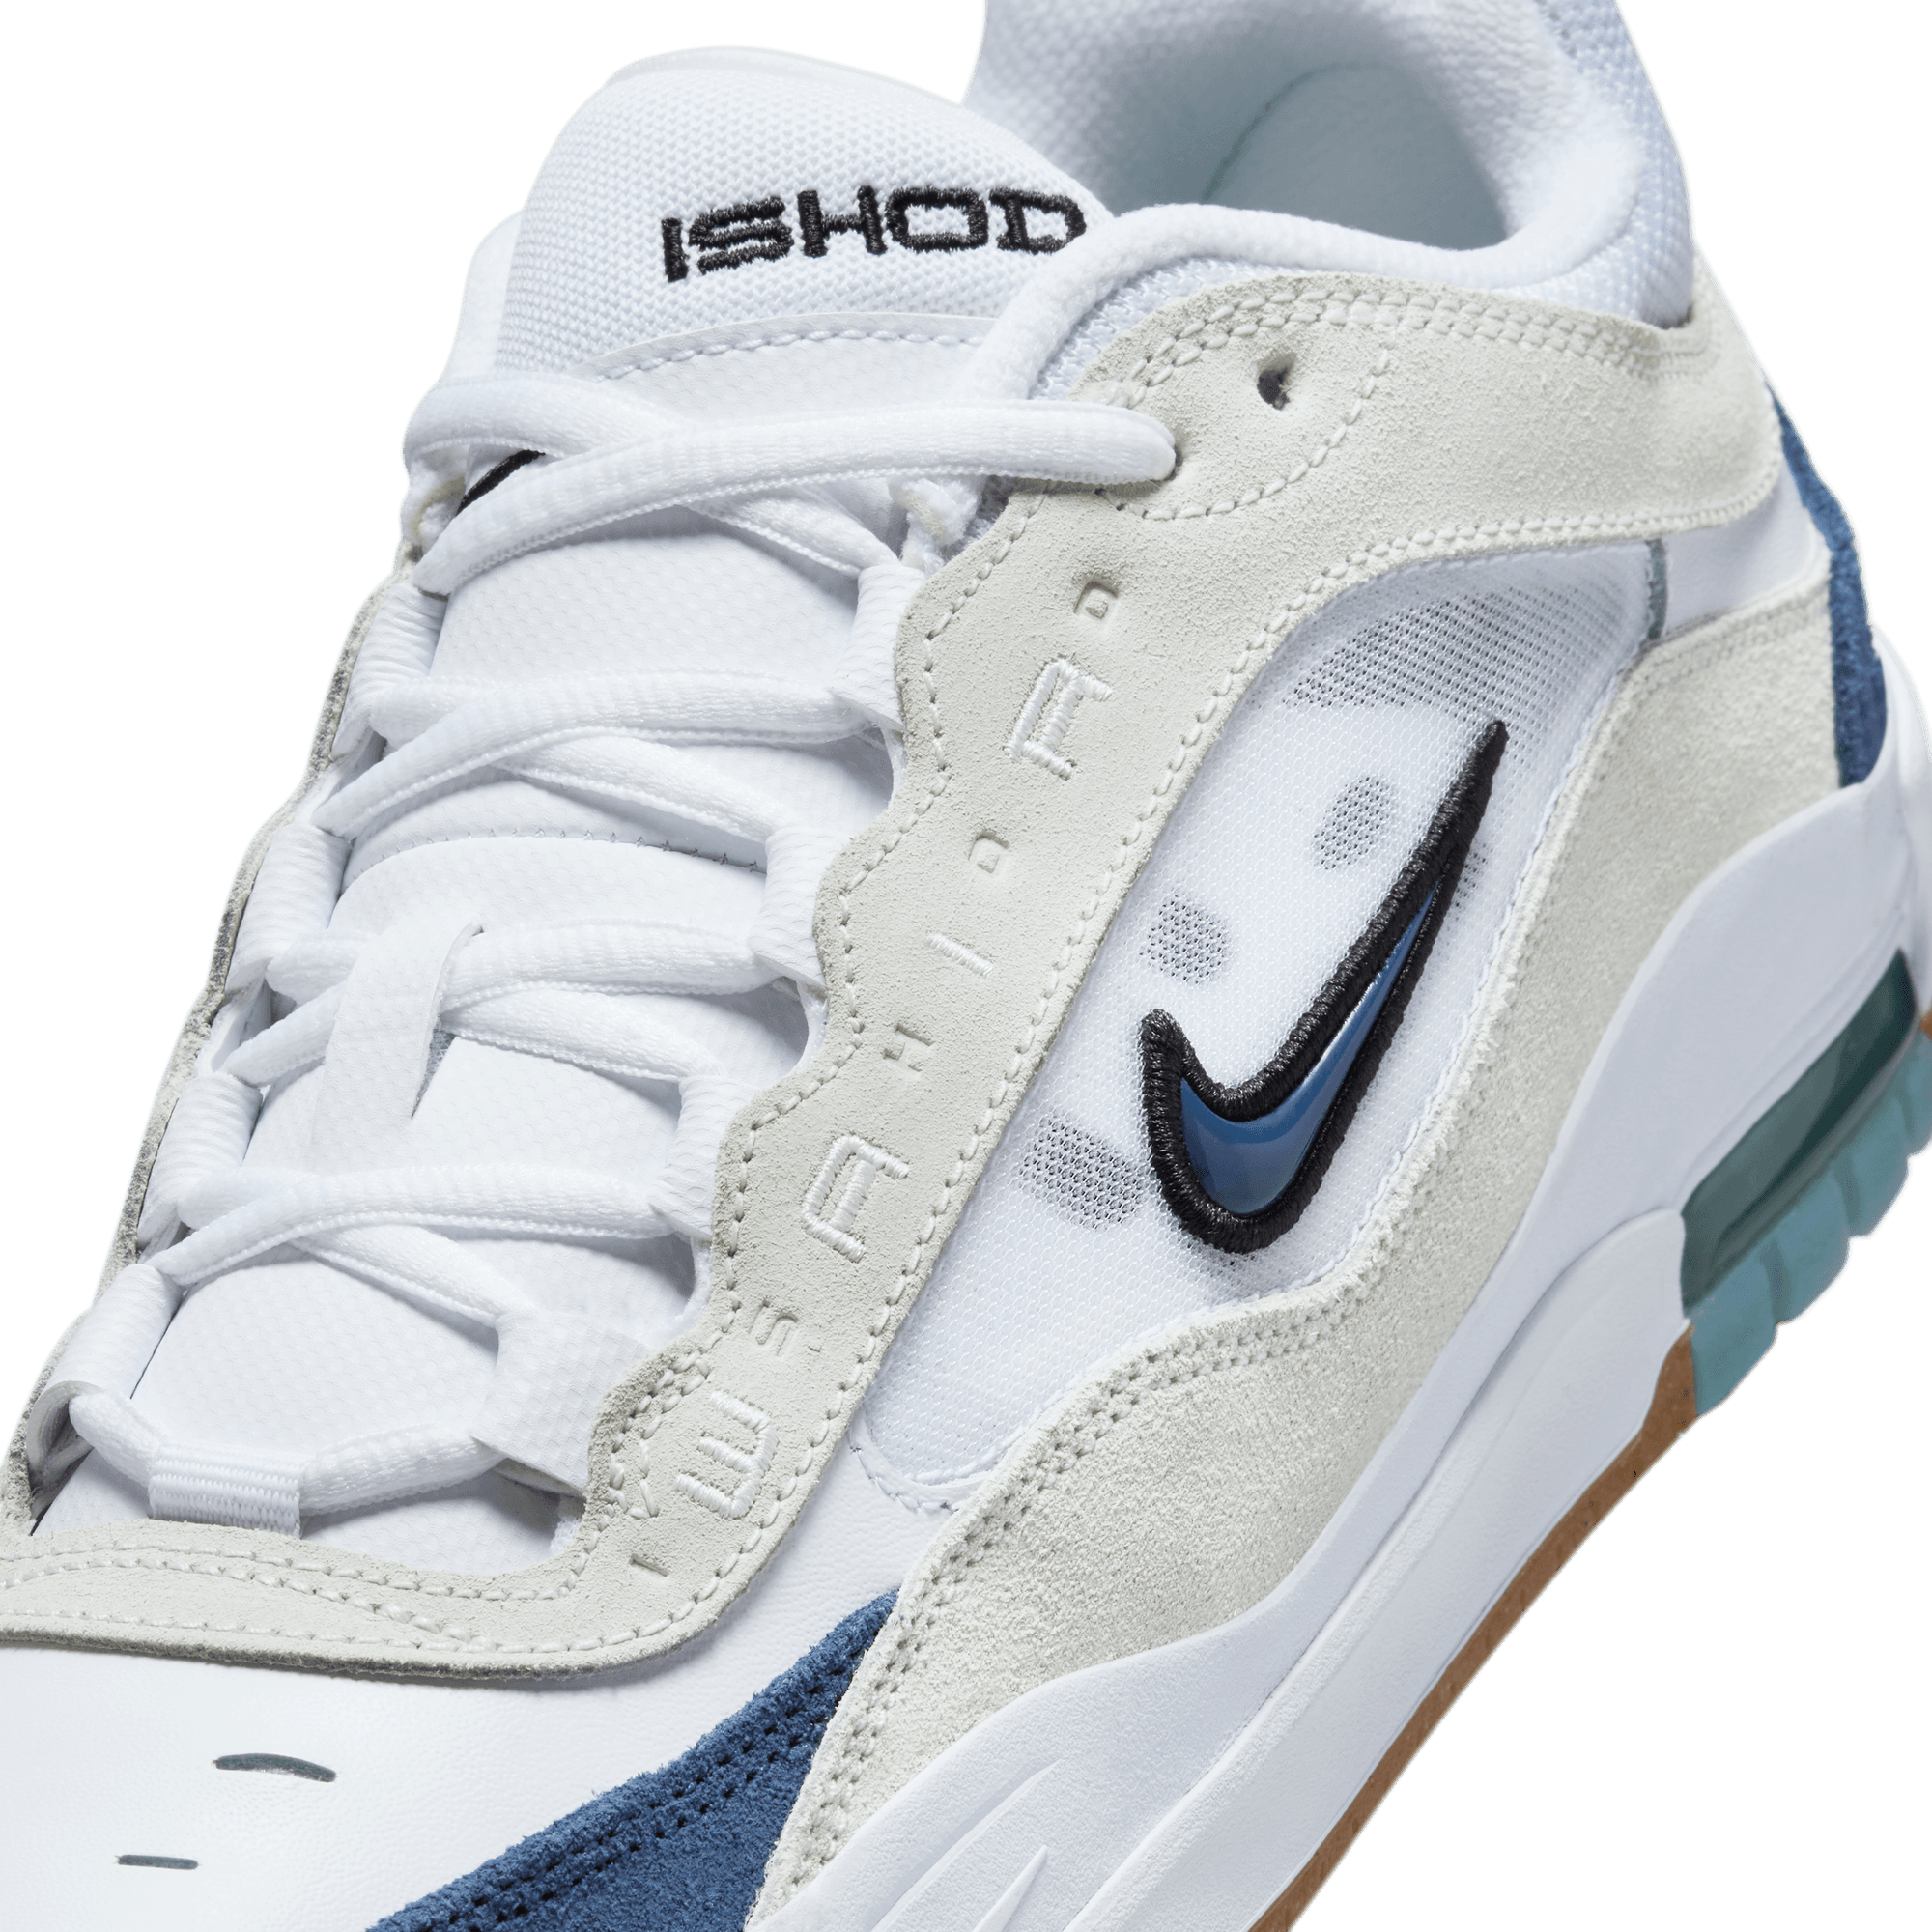 White/Navy Air Max Ishod 2 Nike SB Skate Shoe Detail